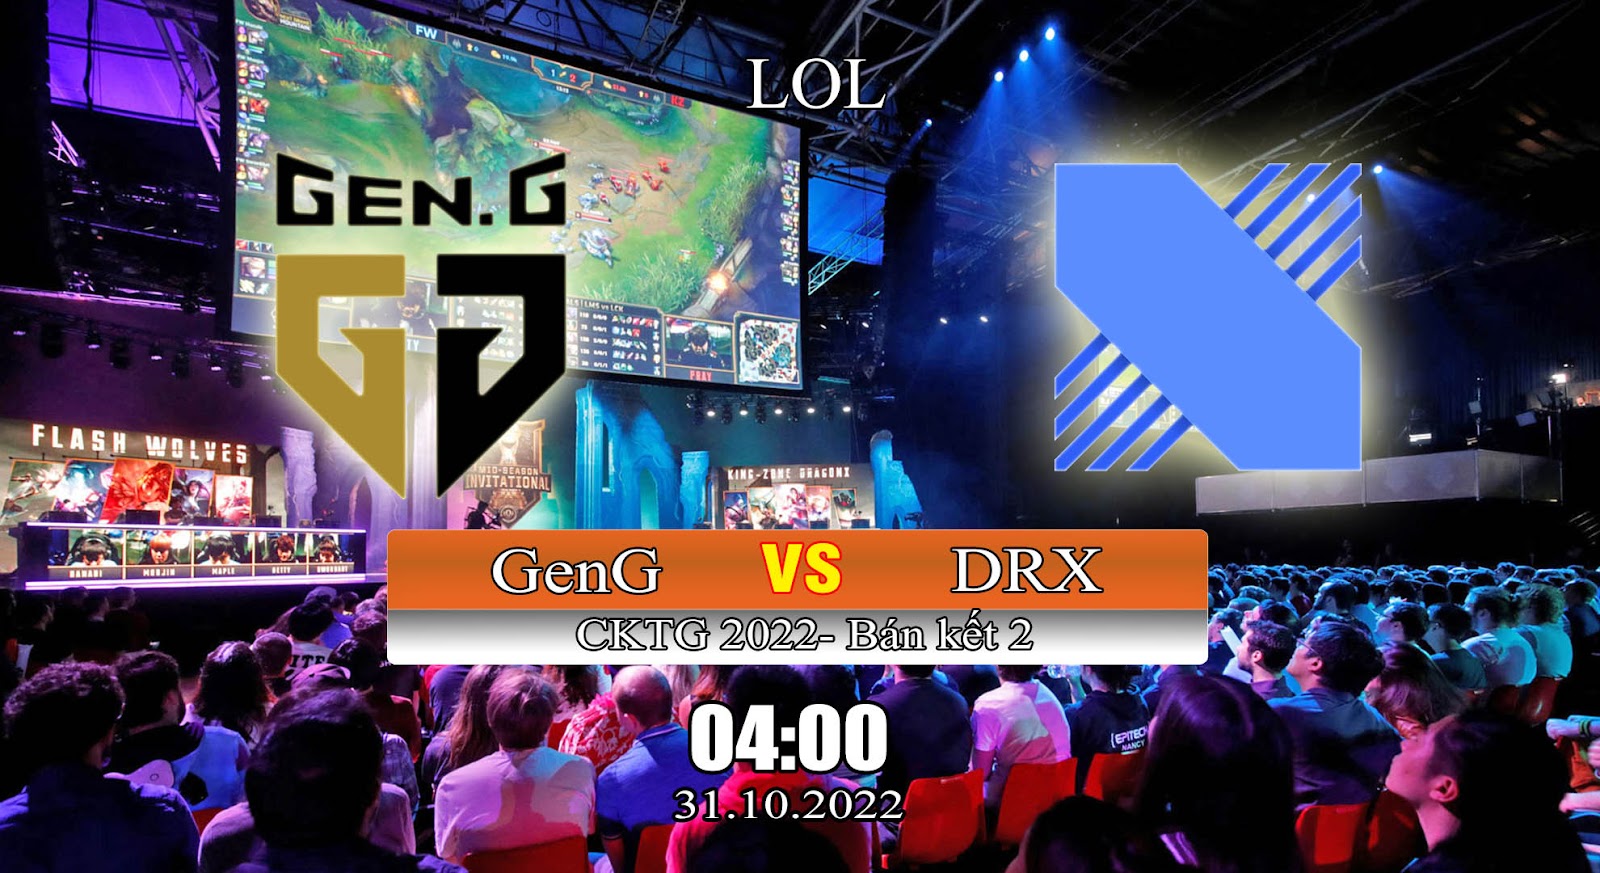 Kèo lol Gen.G vs DRX